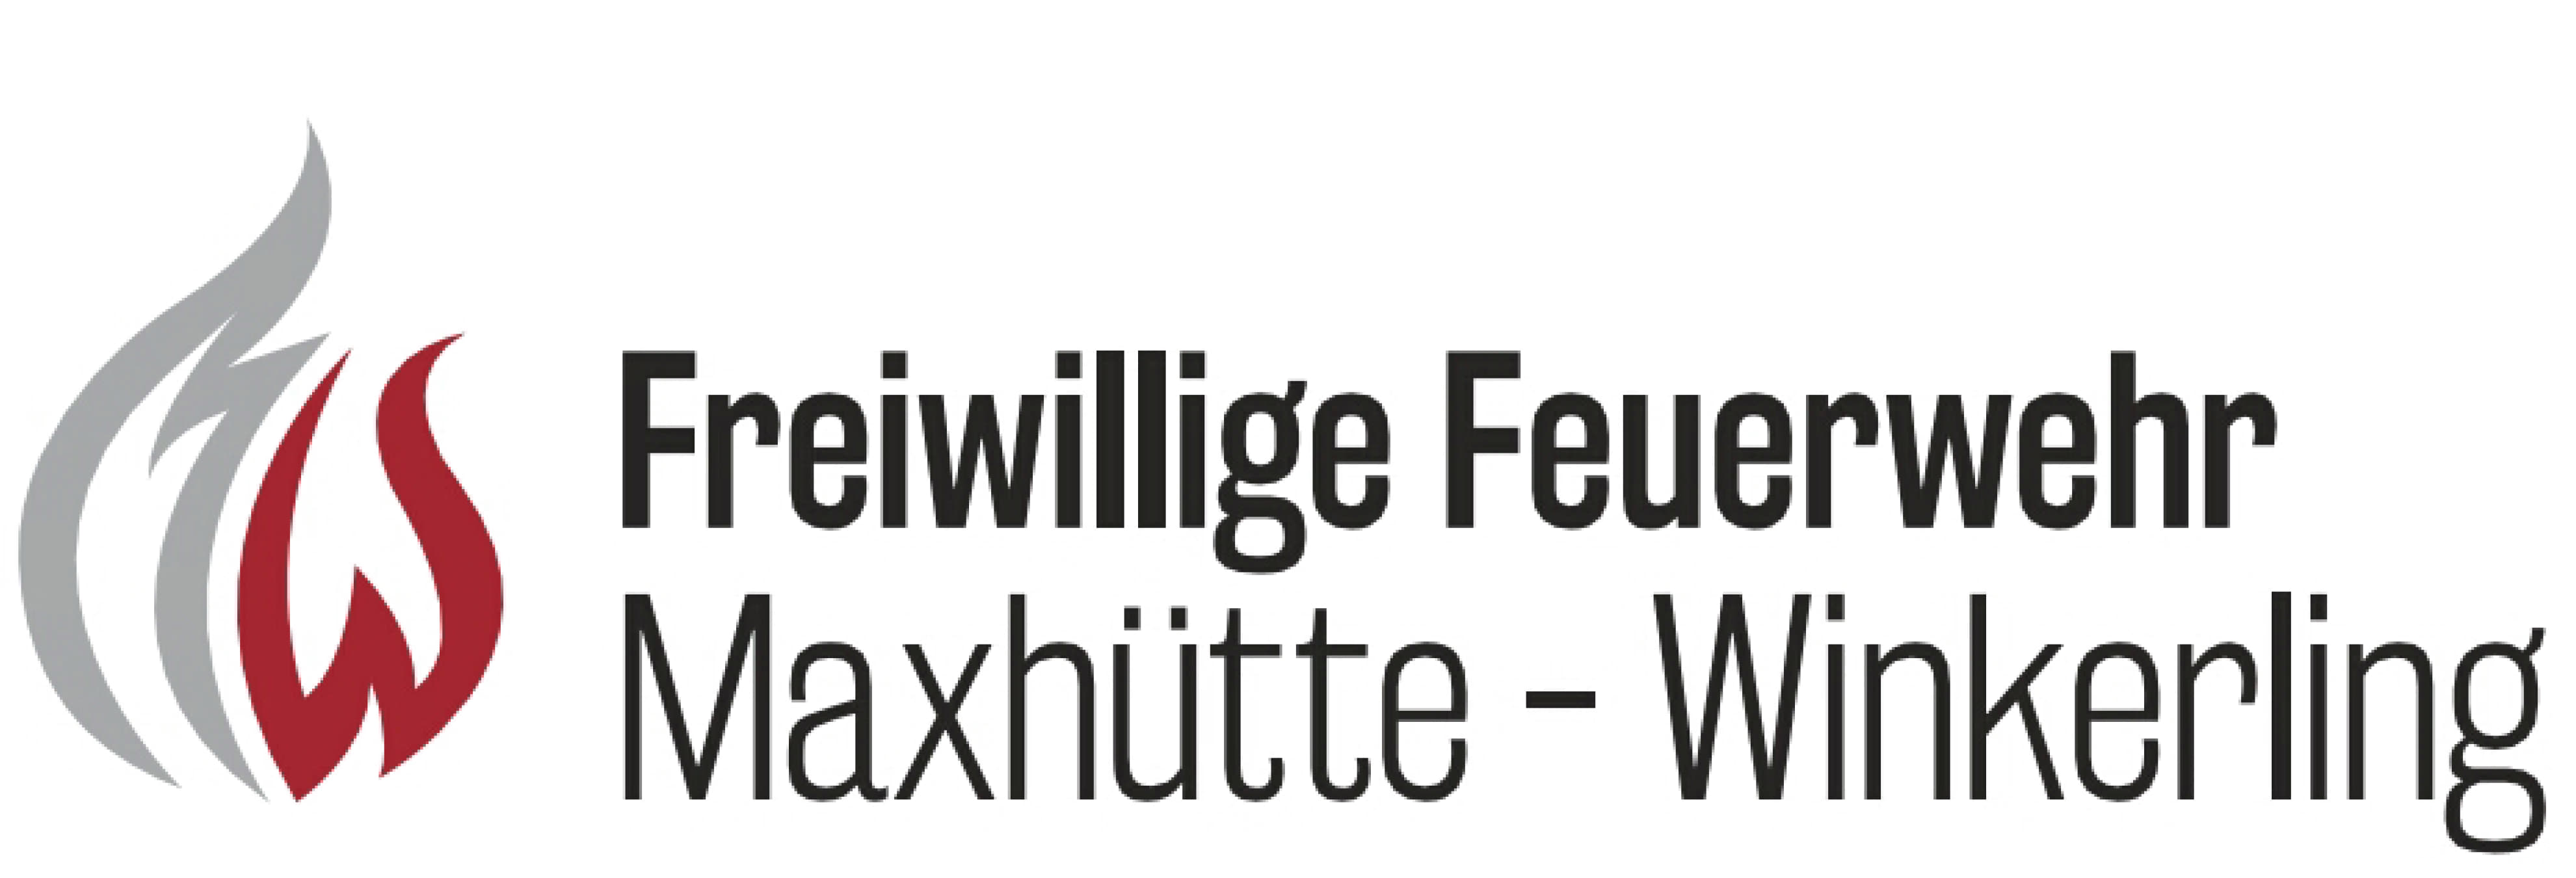 FF Maxhütte-Winkerling